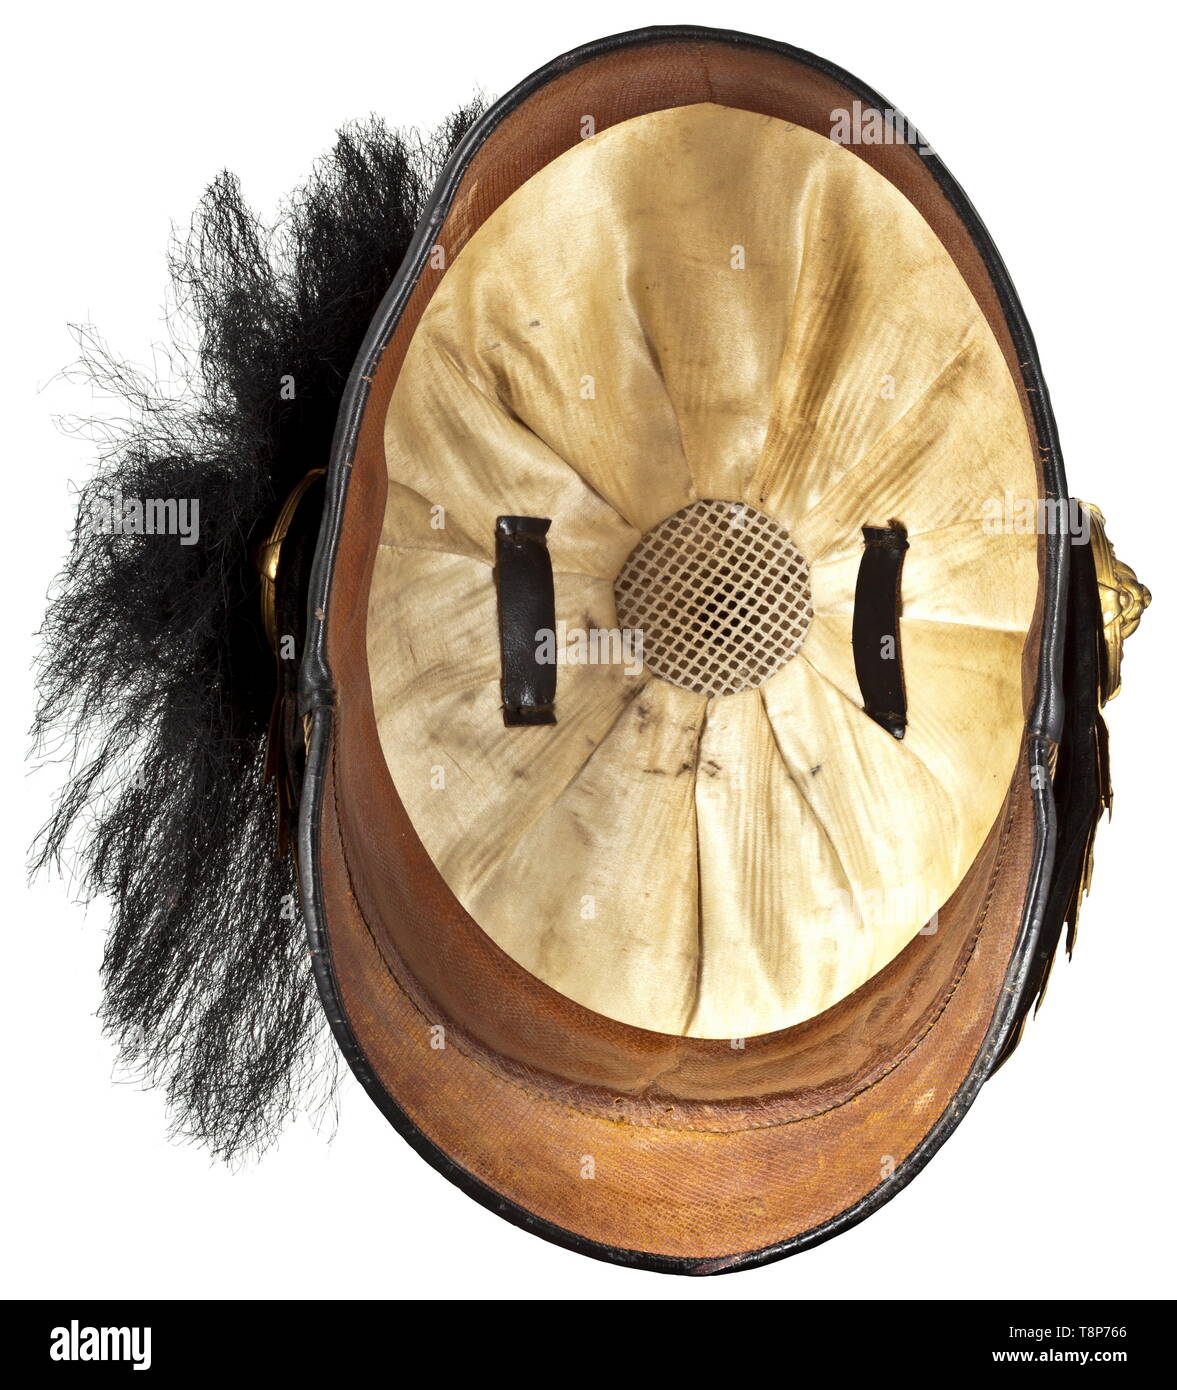 Une czapka et une boîte de cartouches de cavalerie capitaine Hans Schönbichler du Régiment n° 6 Landwehr-Uhlan austro-hongrois Czapka de cuir noir, crâne rouge garance, carré de tissu corde d'argent. Pochettes en cuir doré, bordées de jugulaires de bagues, de l'emblème liés avec le régiment de poing numéro '6', buffalo noir plume cheveux dorés, tête de lion sur les chaînes d'or de patrons, indiquant le rang du cordon avec un central et deux bandes latérales, doublure de soie blanche, portant le nom du propriétaire dans la vieille écriture, brown bandeau. Czapka couvert d'origine, Additional-Rights Clearance-Info-ligh-Not-Available Banque D'Images